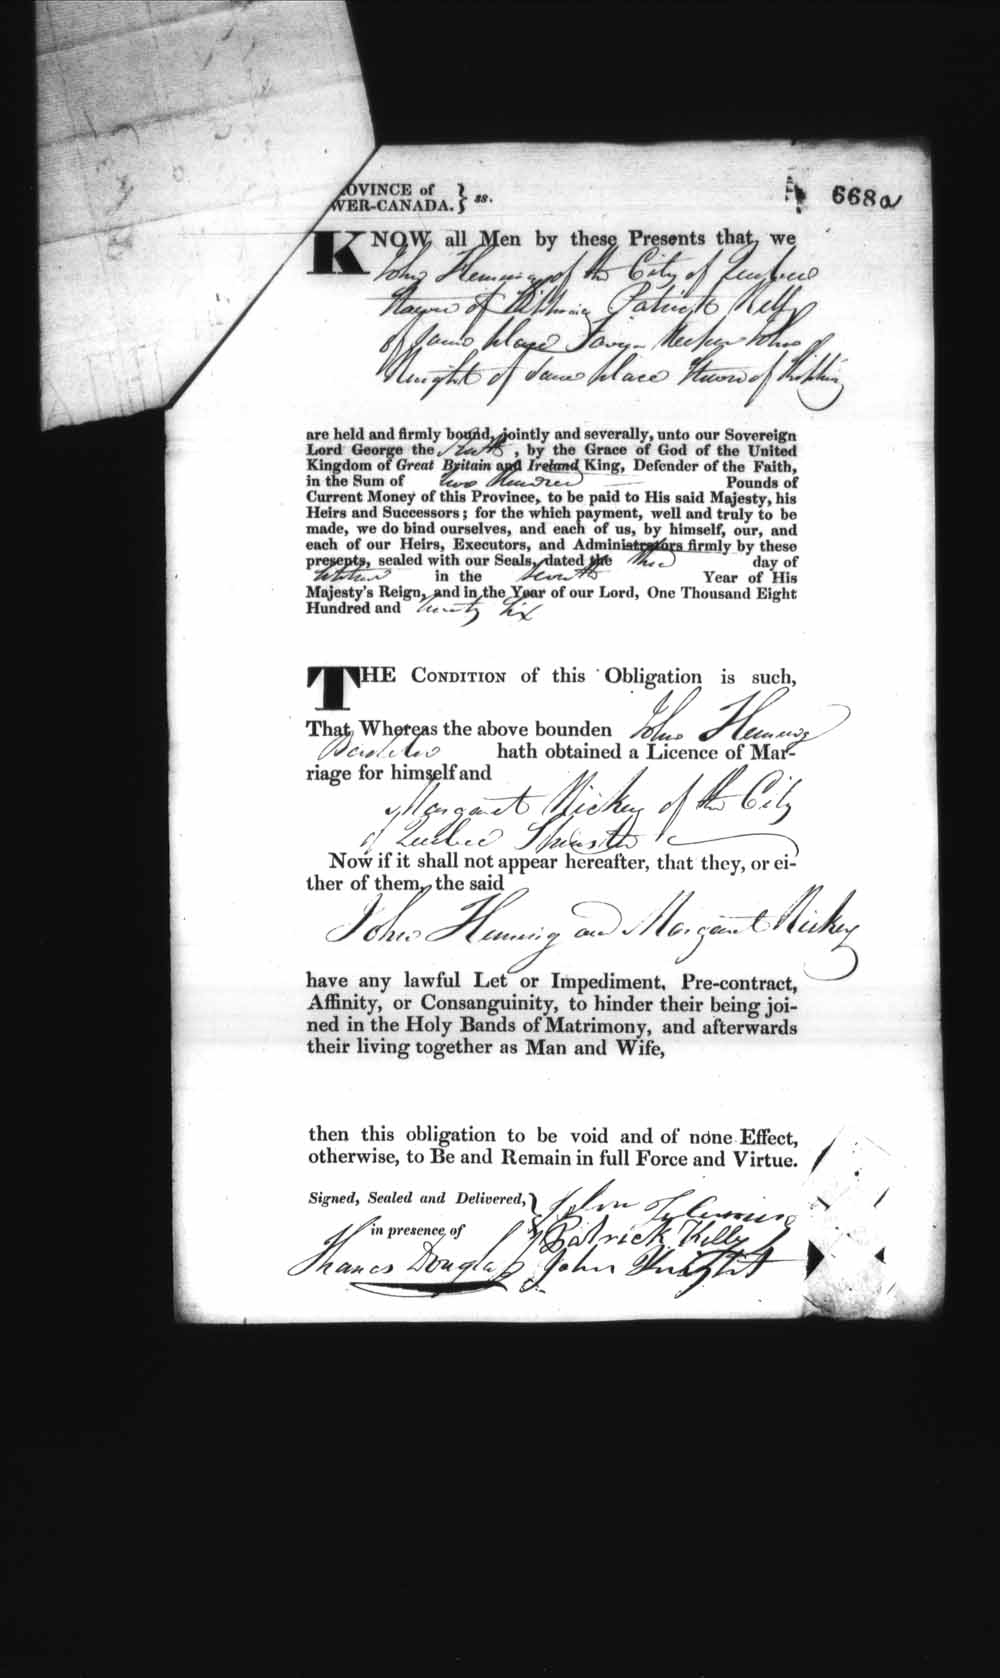 Page numérisé de Cautionnements de mariages pour le Haut-Canada et le Bas-Canada (1779-1865) pour l'image numéro: e008236707